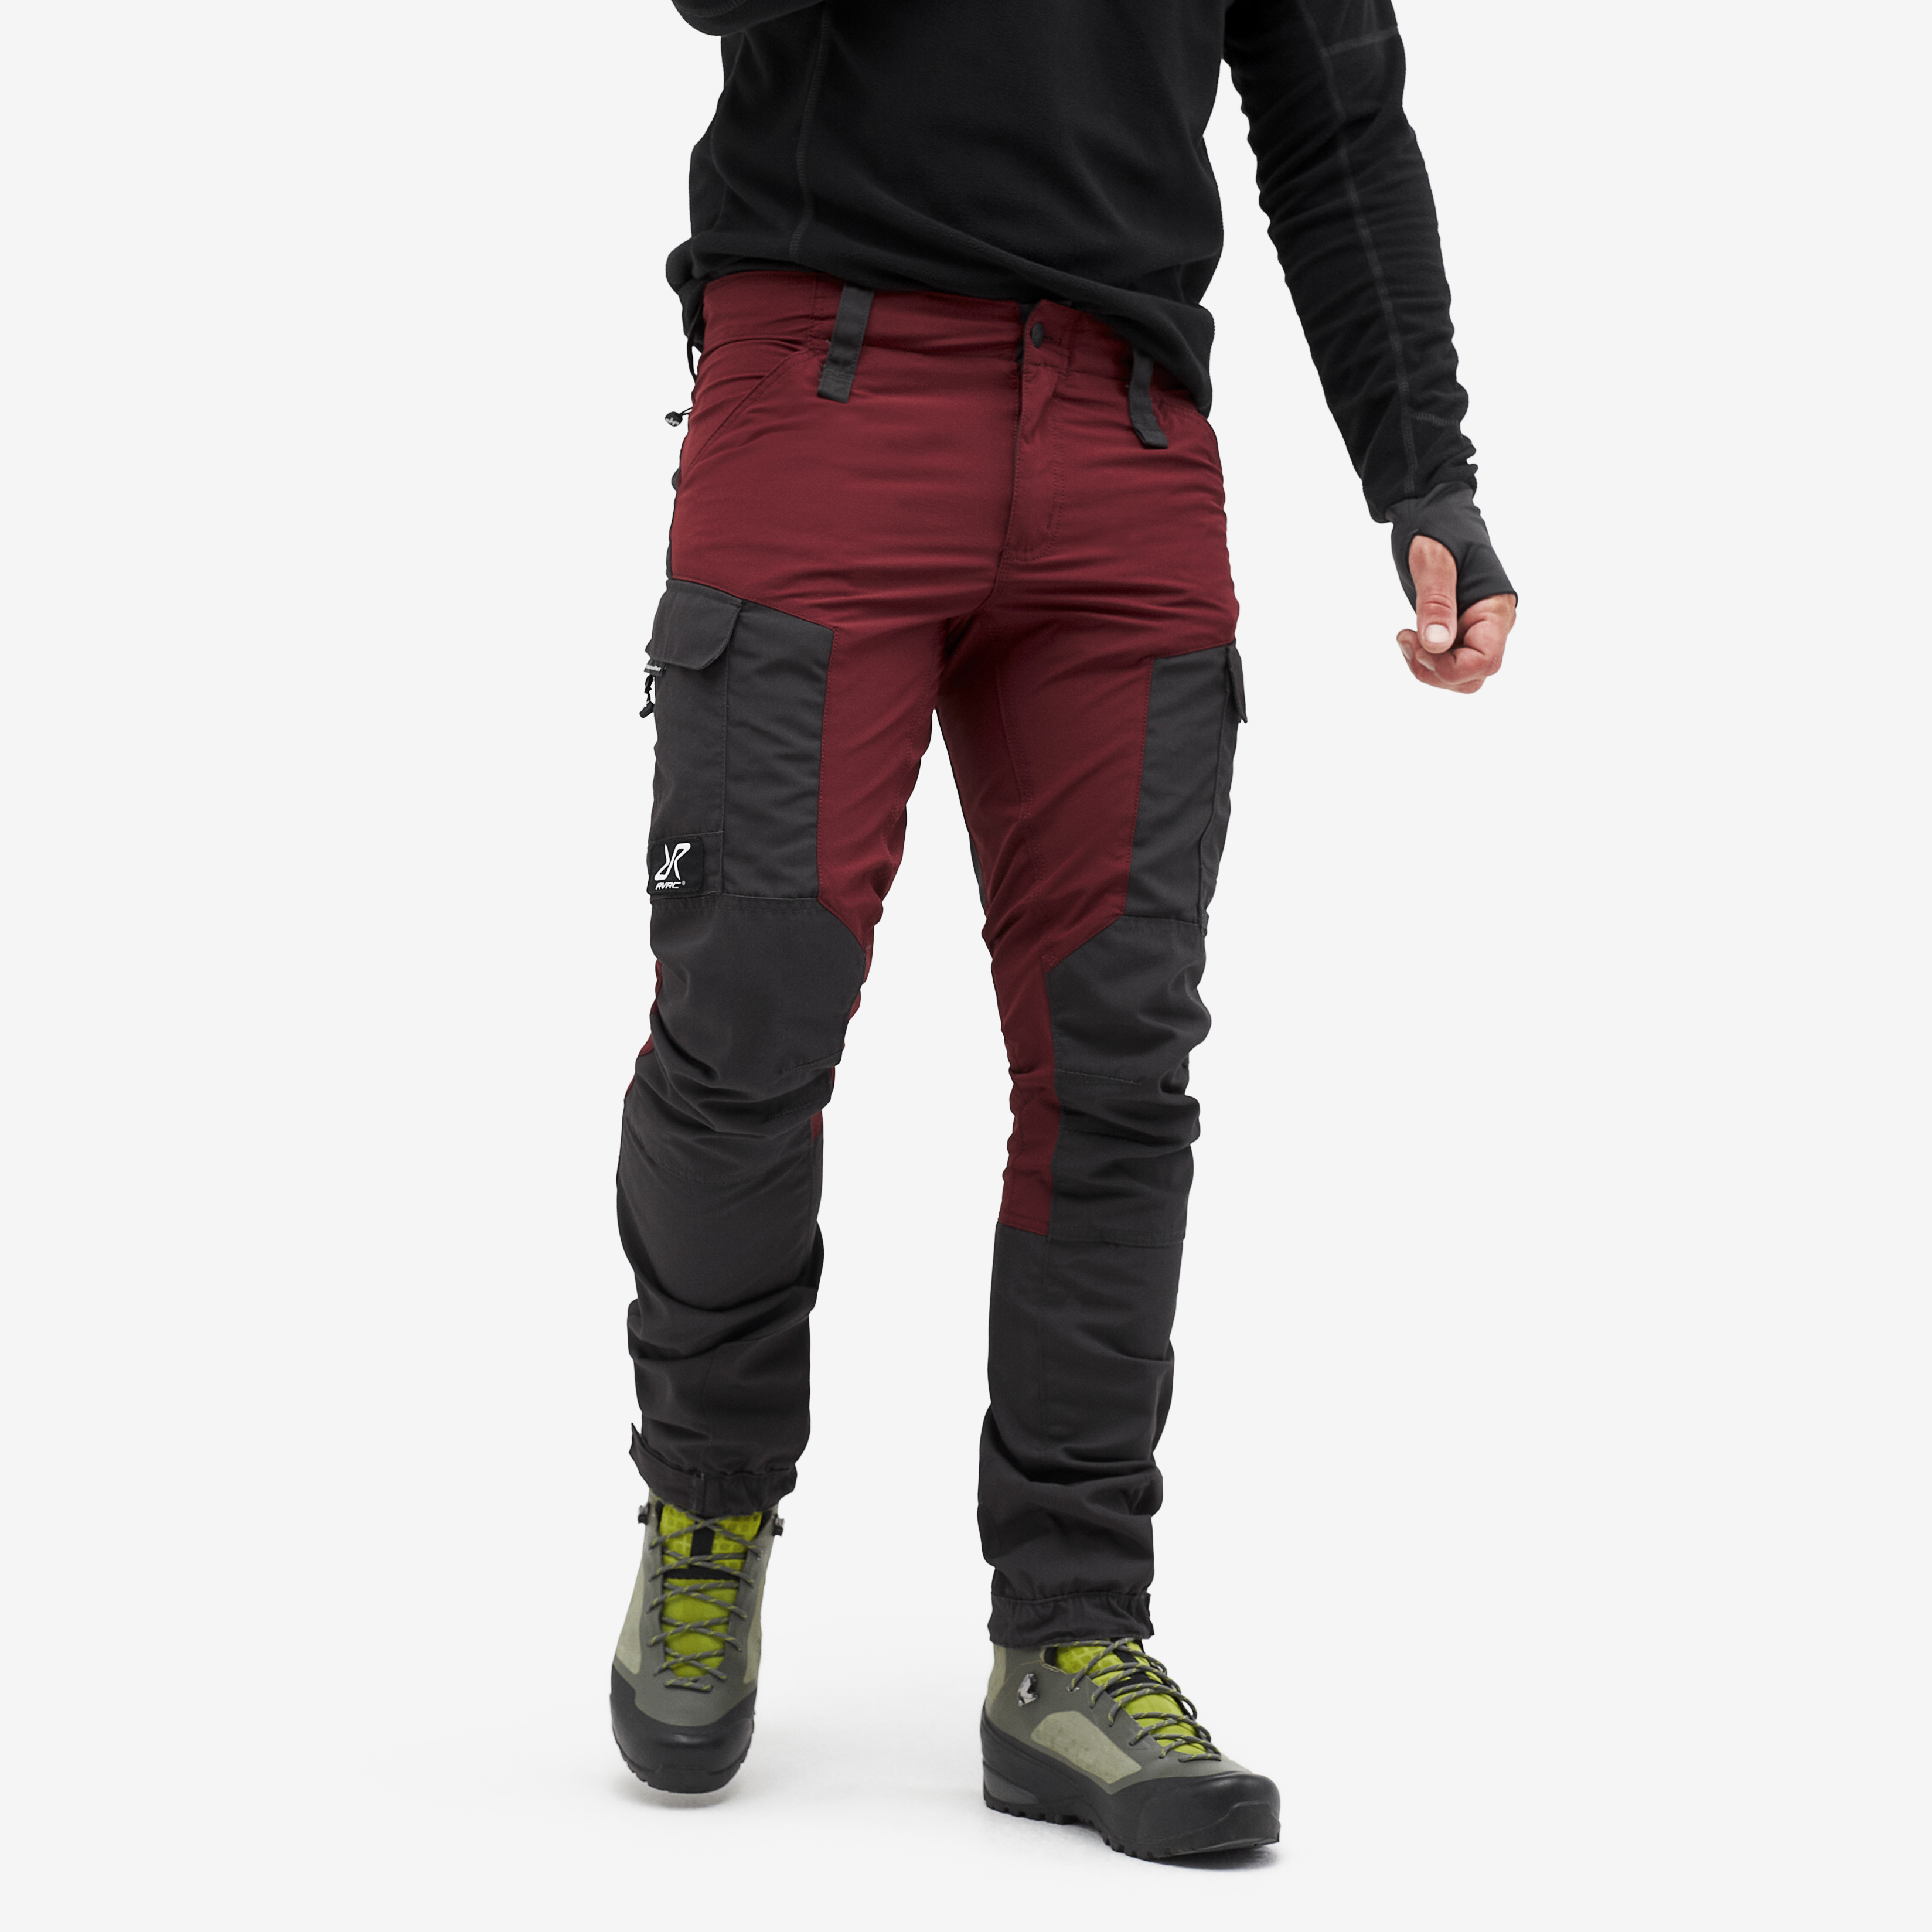 Pantalones outdoor RVRC GP para hombre en rojo oscuro